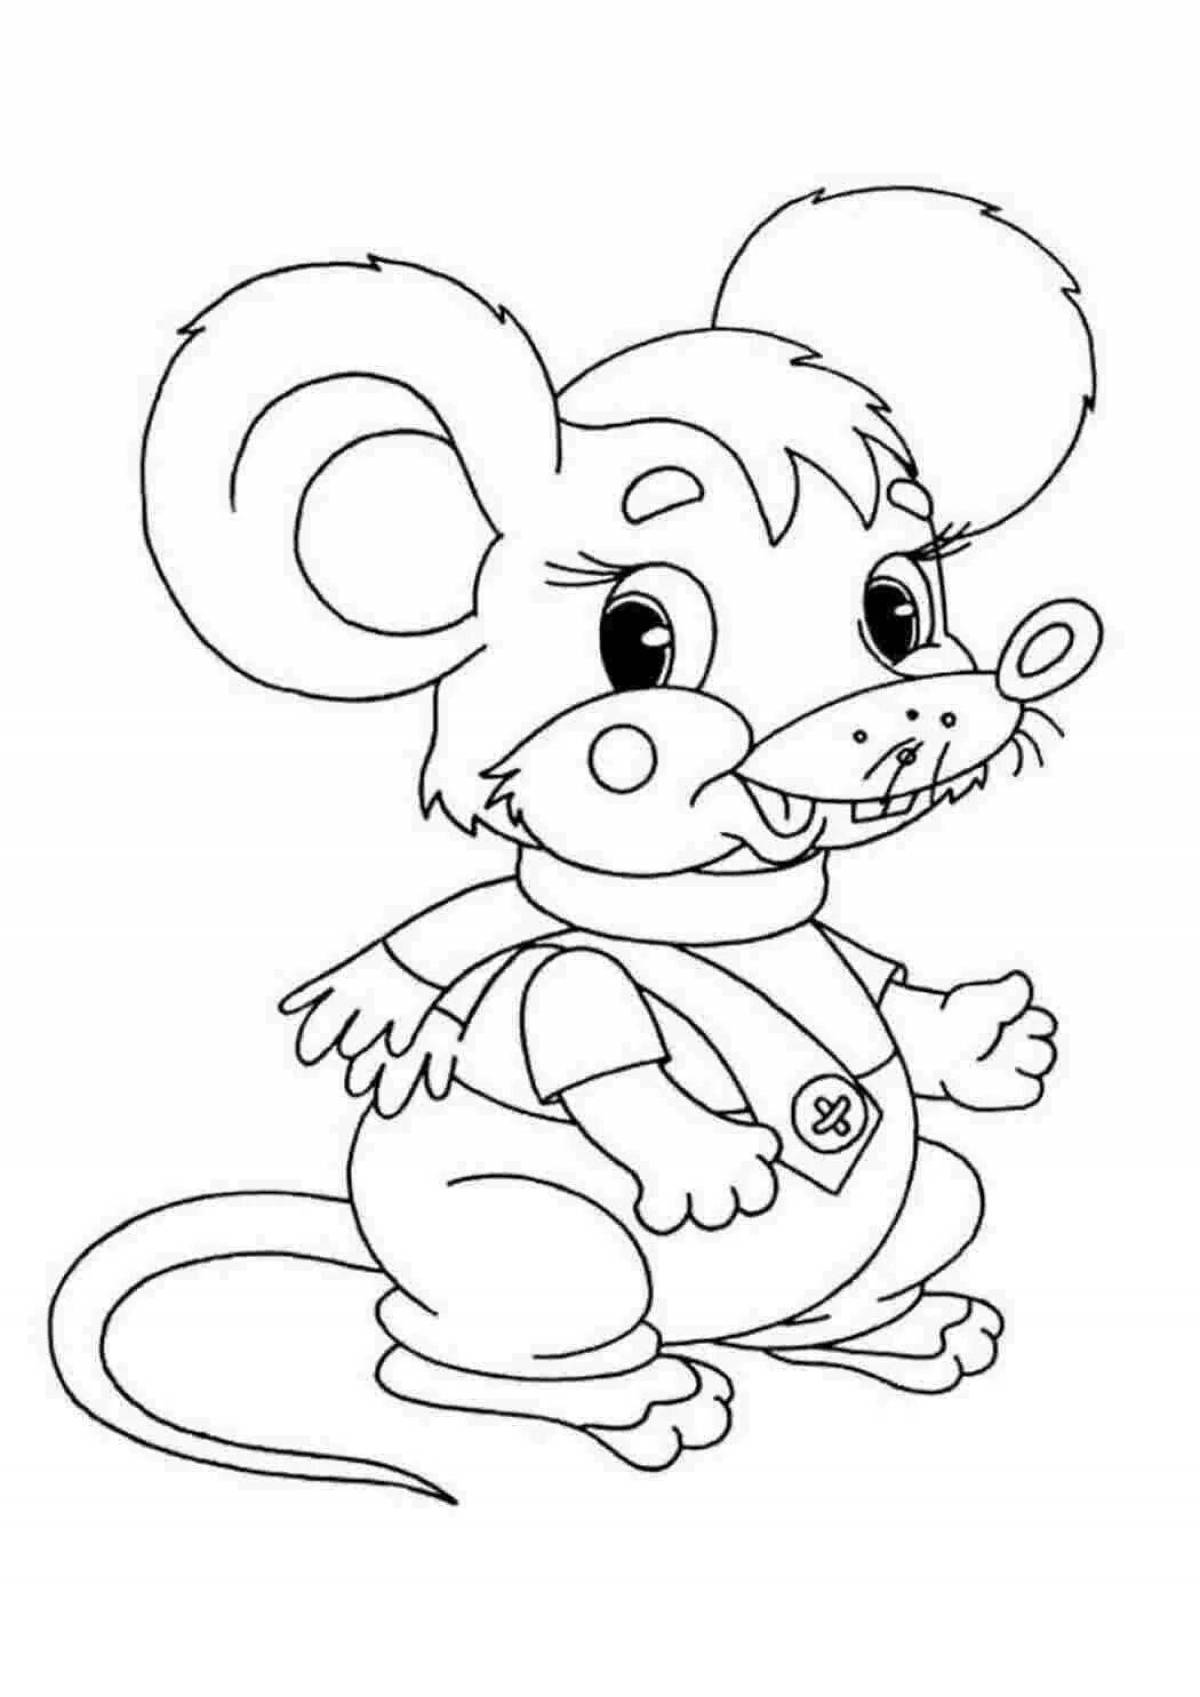 Раскраска мышь распечатать. Раскраска мышка. Мышонок раскраска для детей. Раскраска зверята для детей. Мышка раскраска для детей.